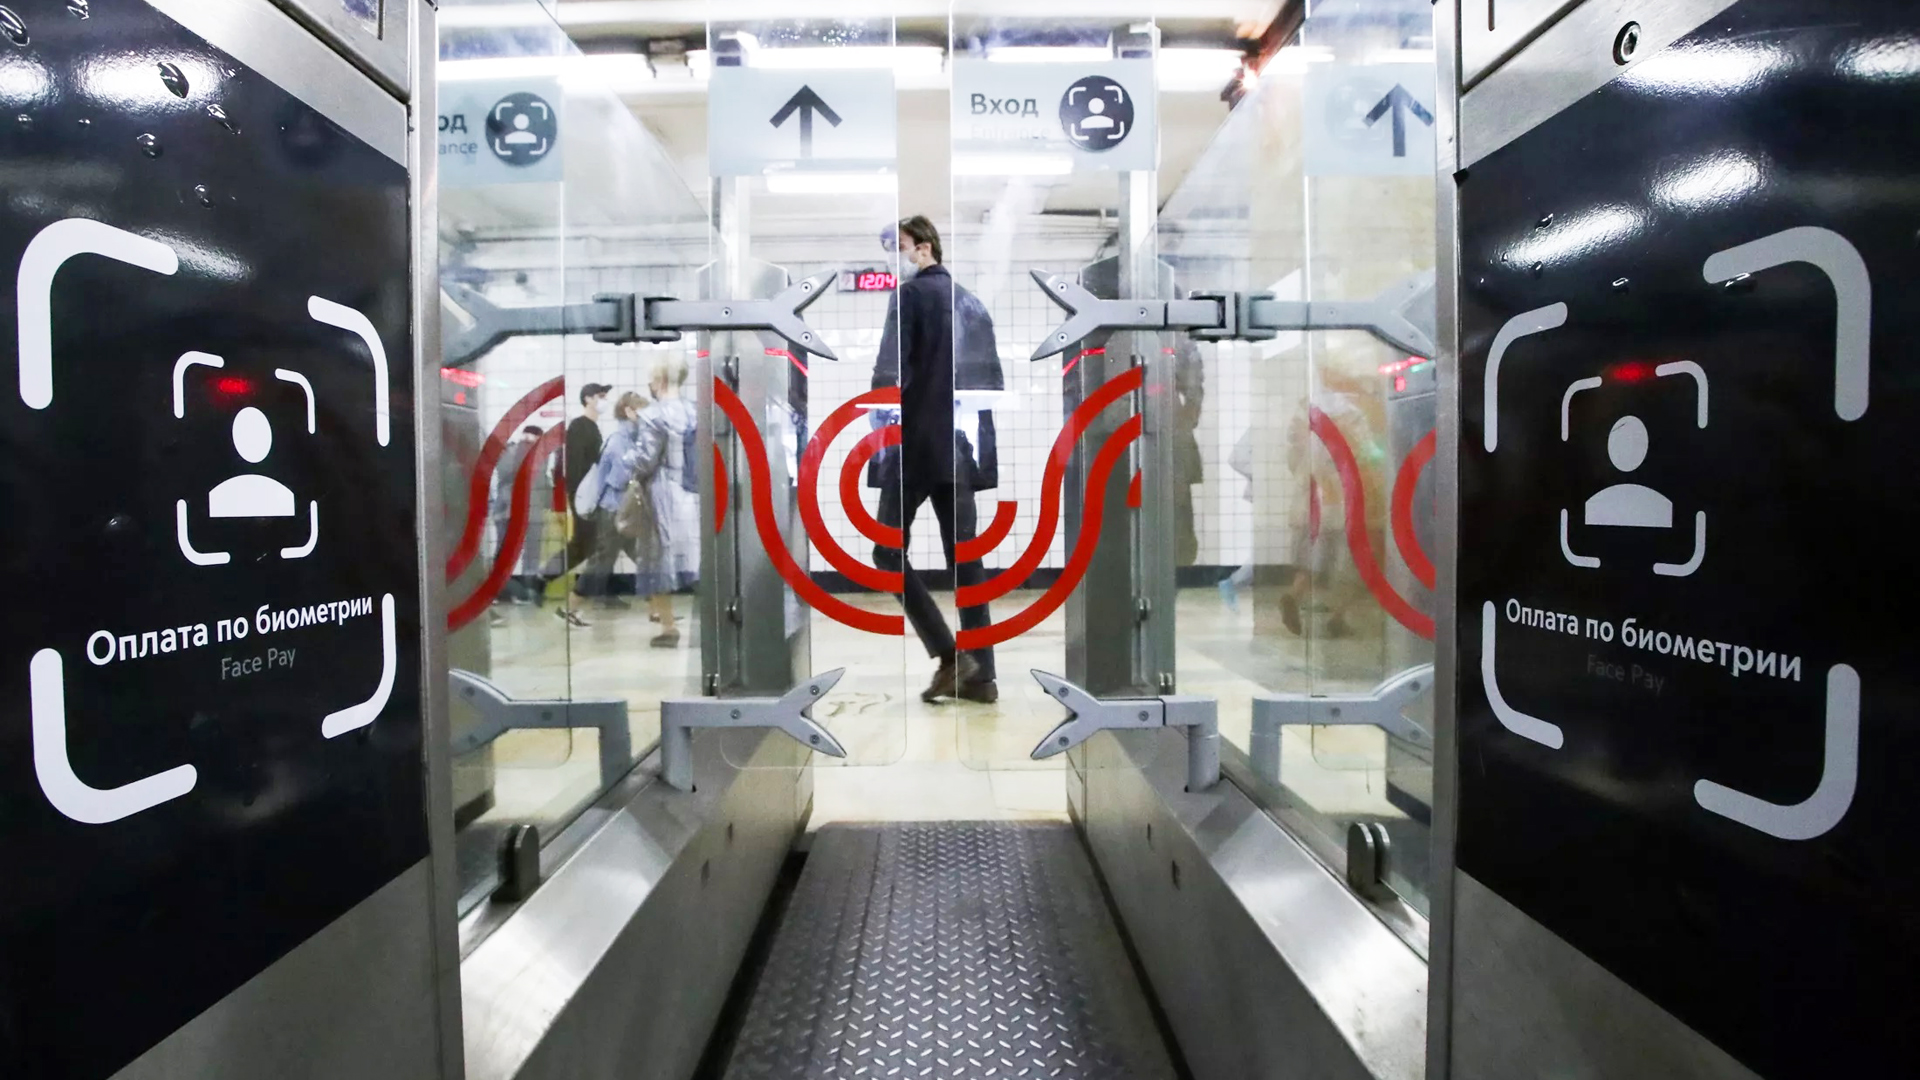 Пассажиры московского метро переходят на биометрическую оплату Face Pay